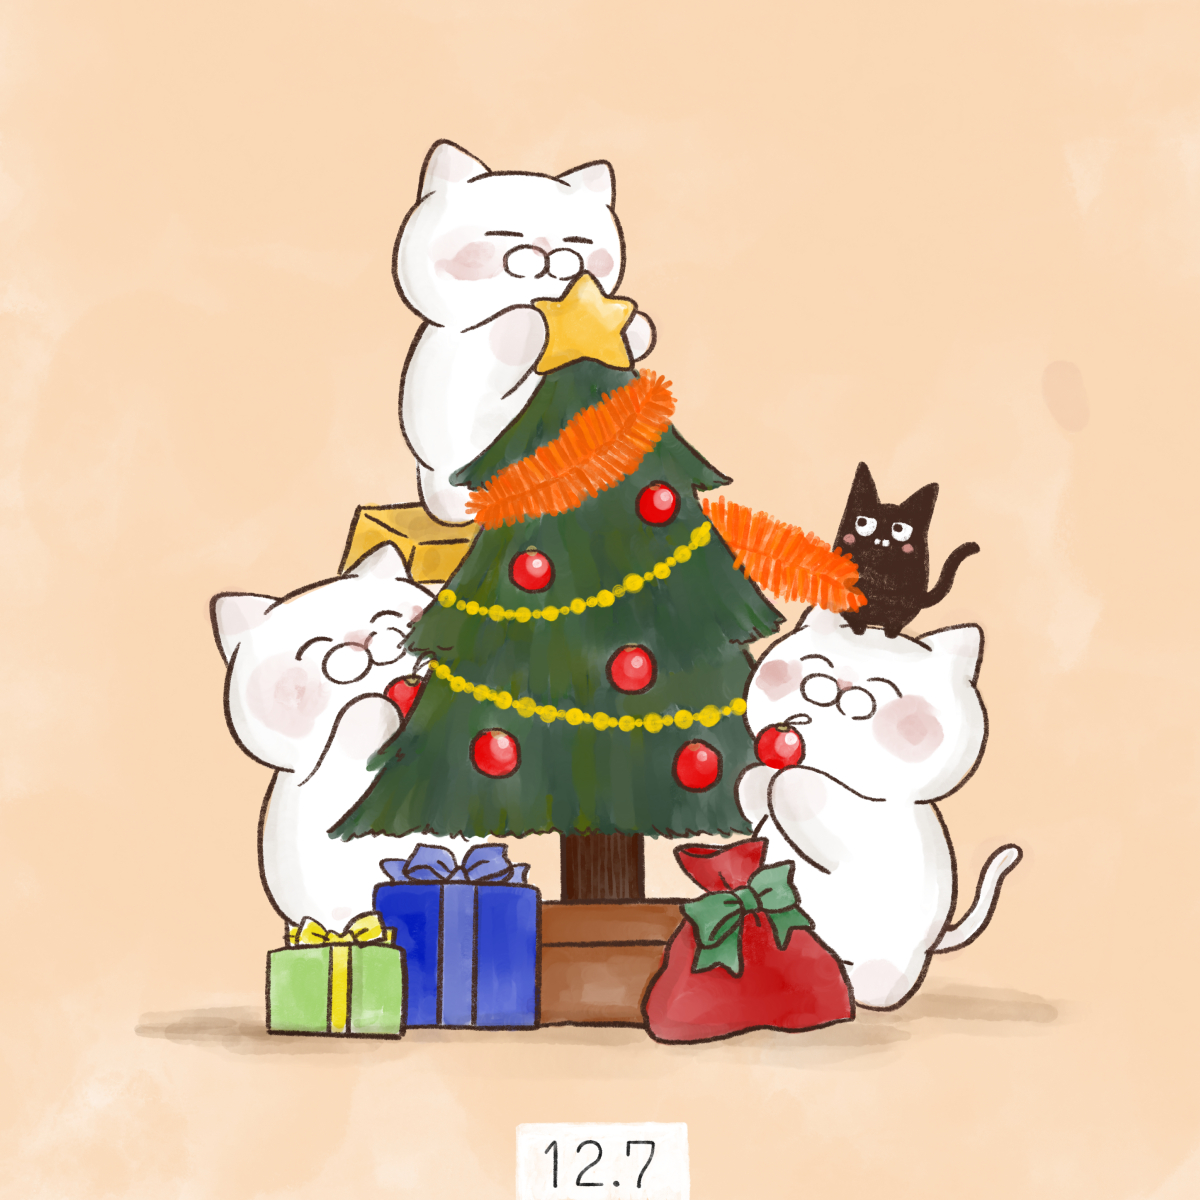 「12月7日
【#クリスマスツリーの日】

1886年12月7日に、横浜で外国人船」|大和猫のイラスト